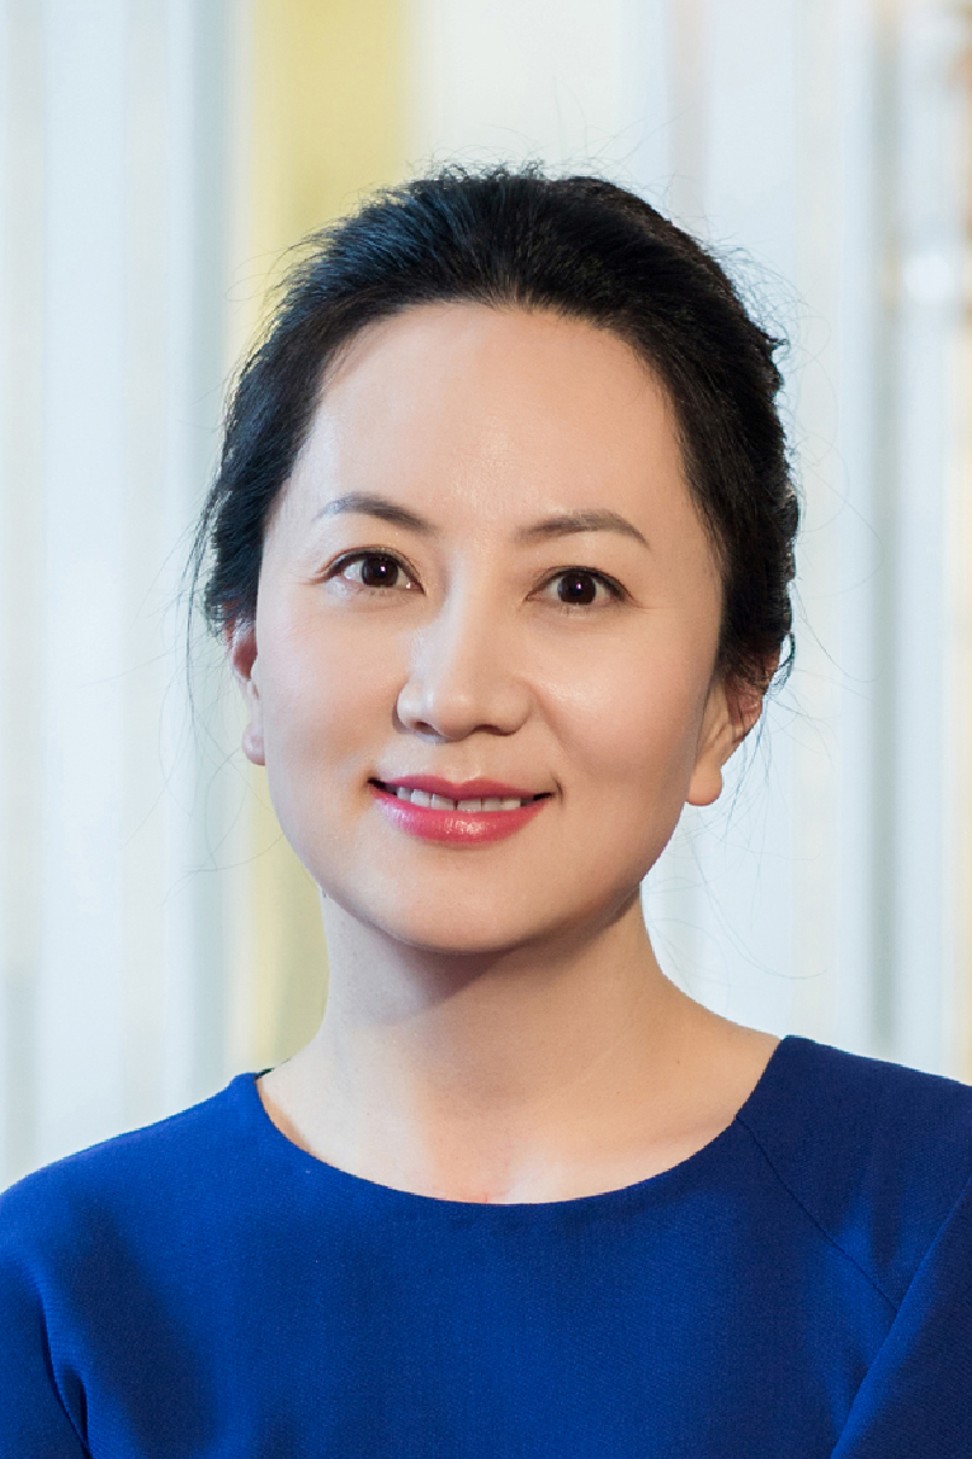 Huawei chief financial officer Sabrina Meng Wanzhou